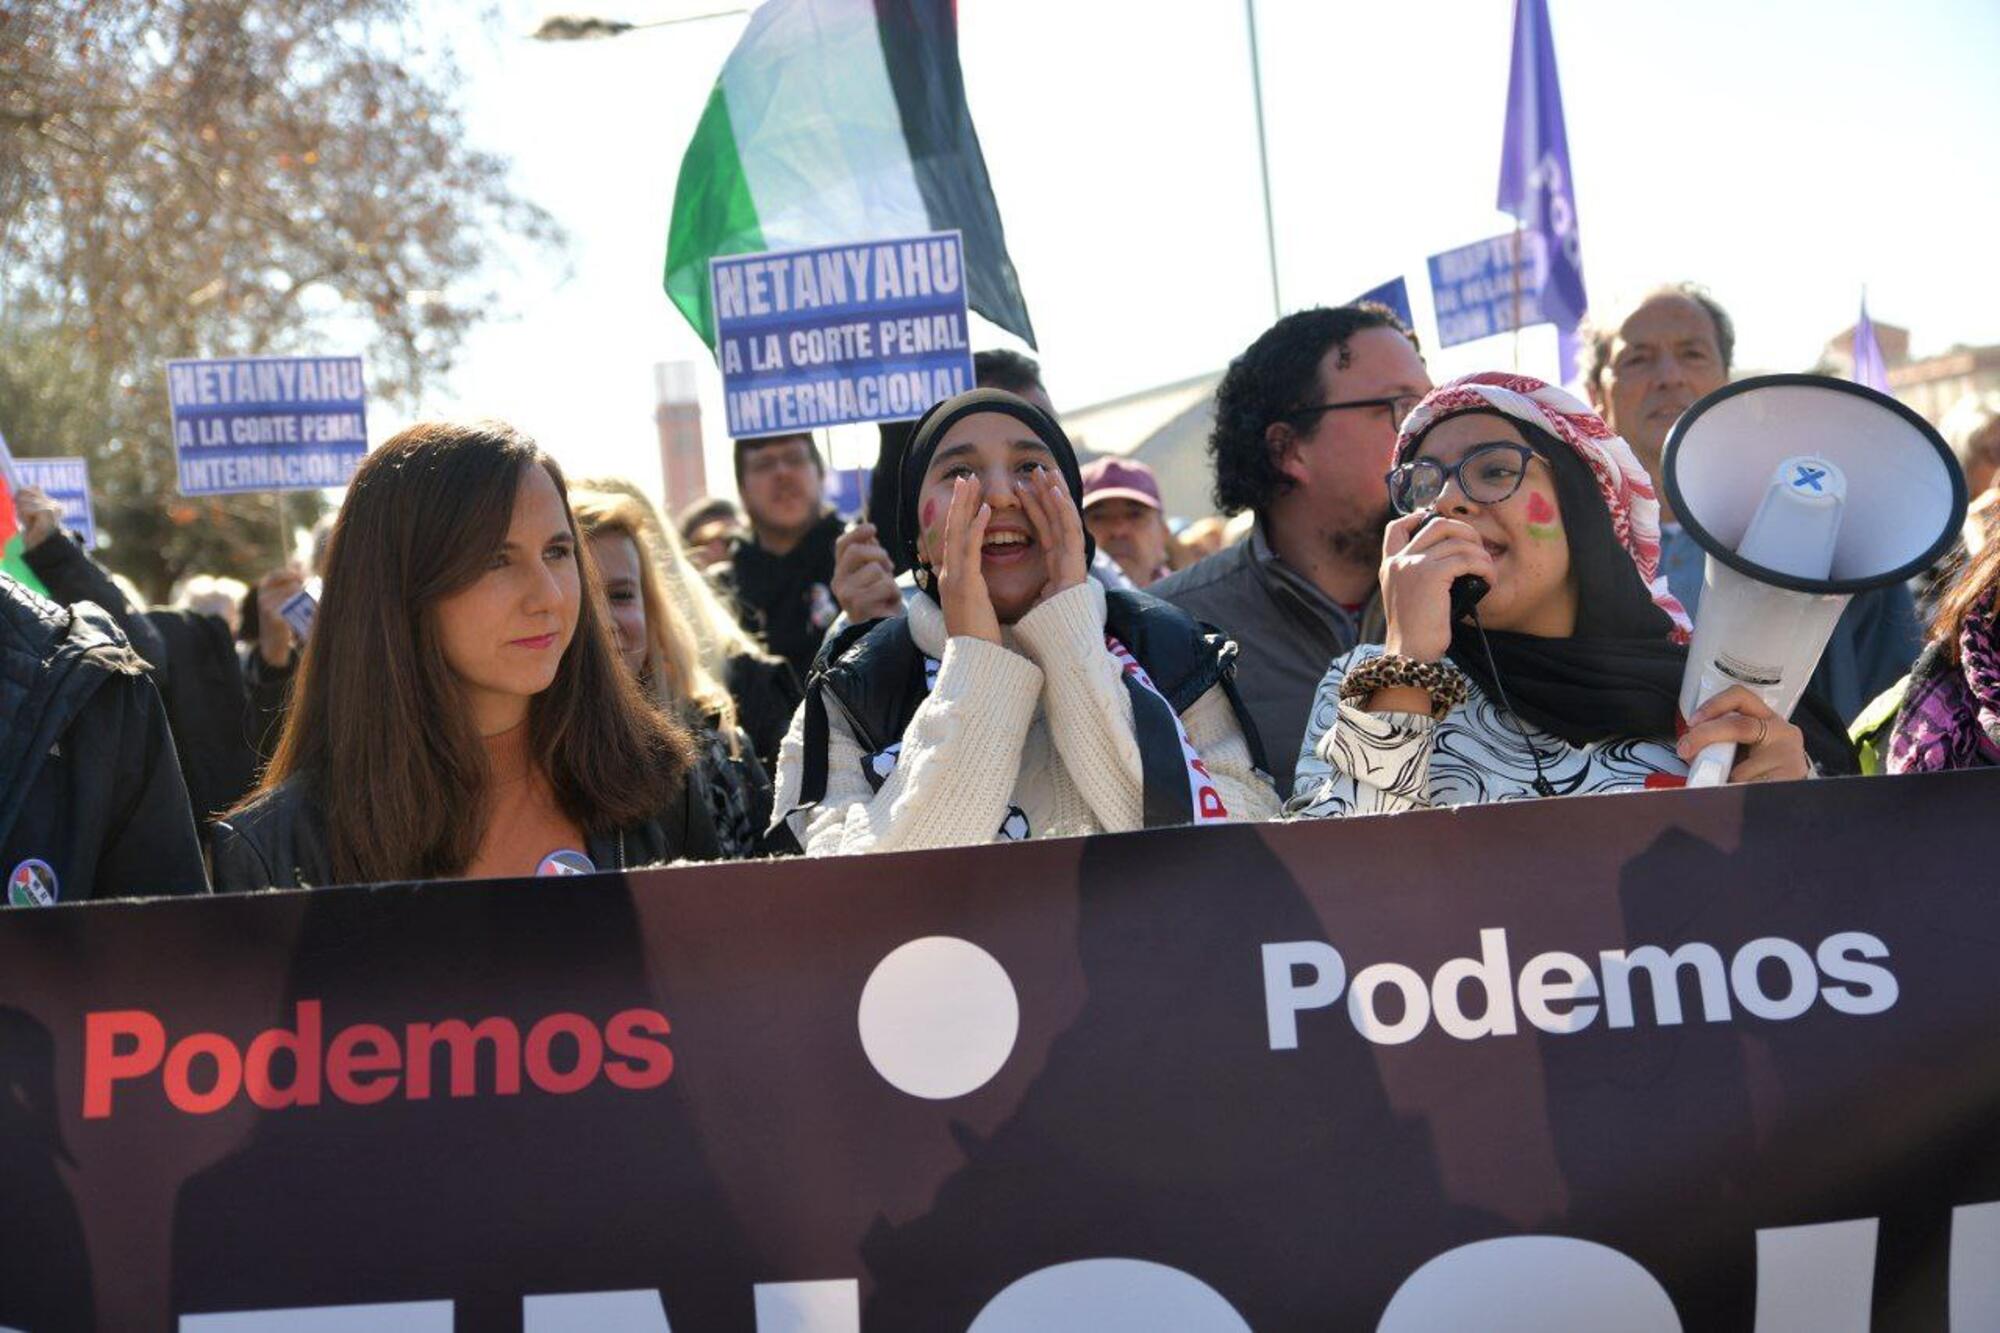 Manifestación del 17 de febrero "Libertad para Palestina" convocada por Sumar, IU, Más País, PCE y los grandes sindicatos. El PSOE apoyó la manifestación como "participante". - 14